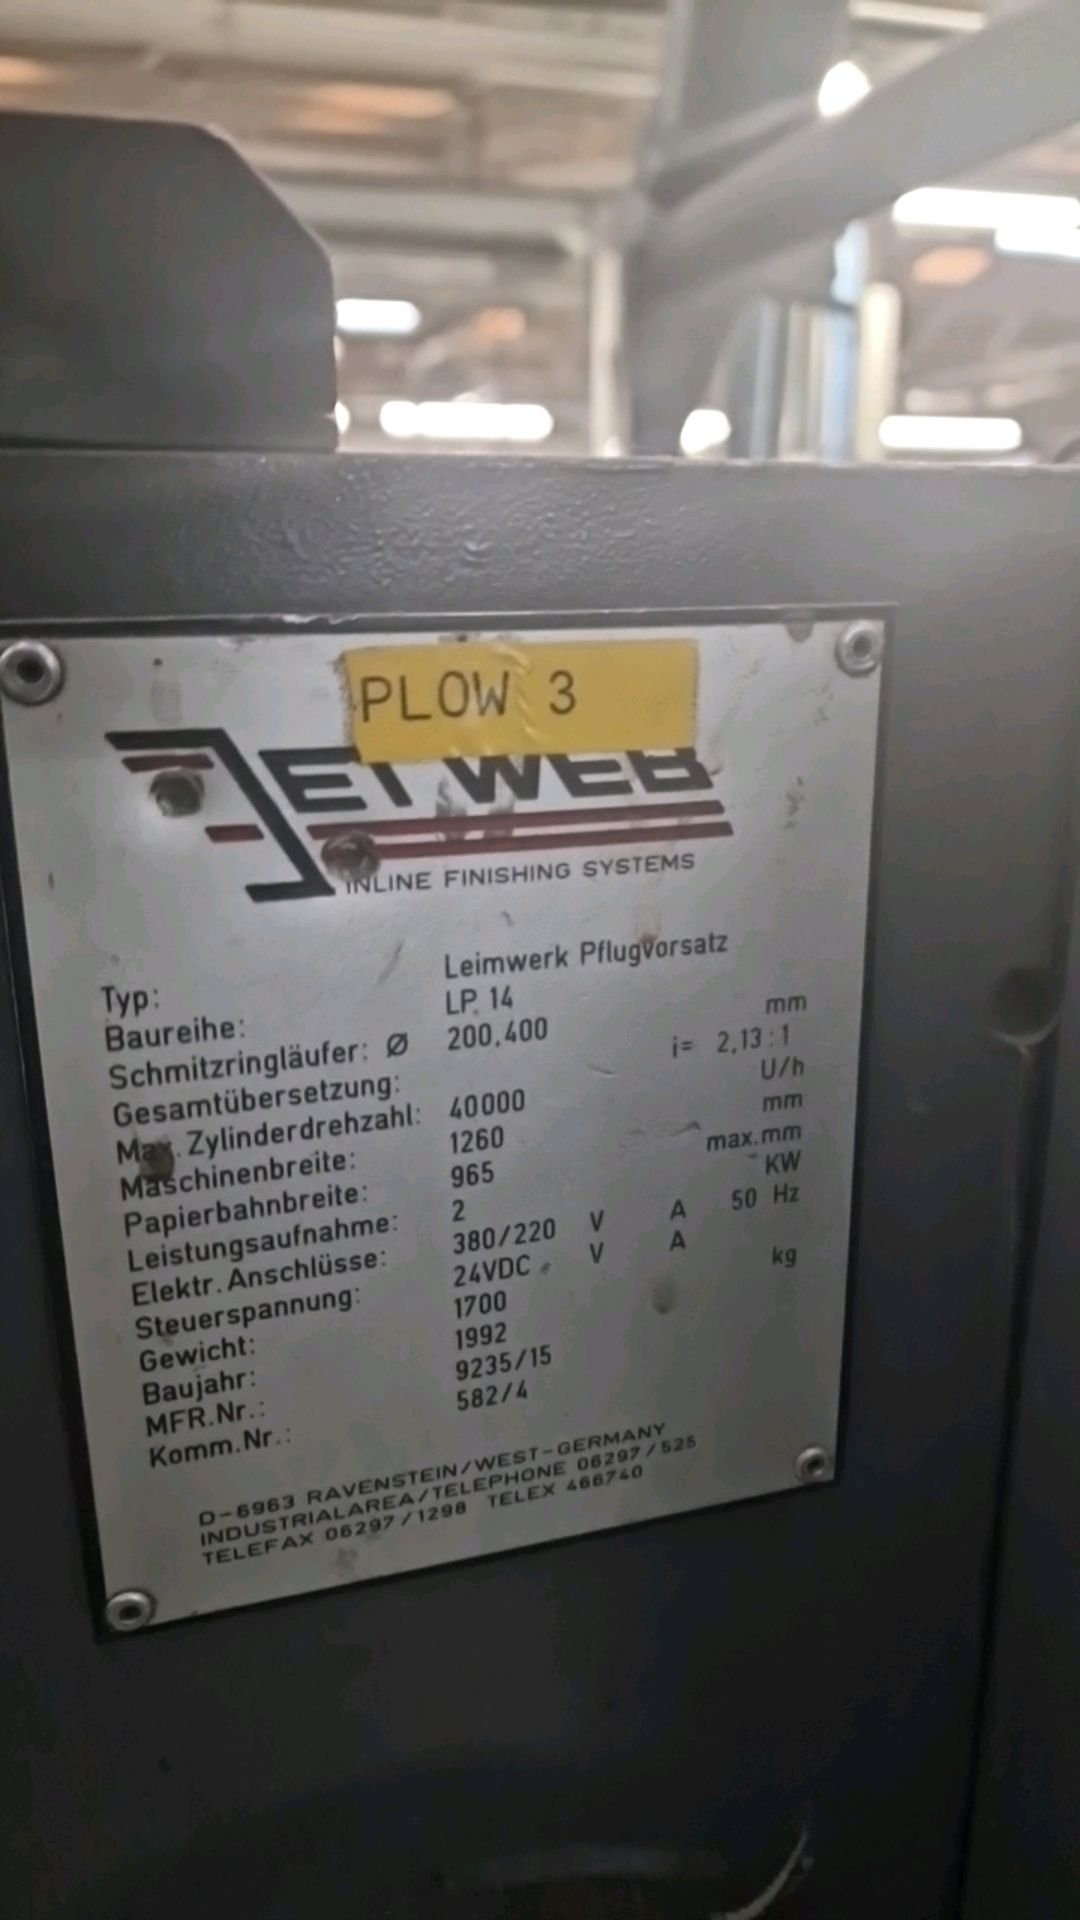 Jet Web Plow Machine - Bild 3 aus 7